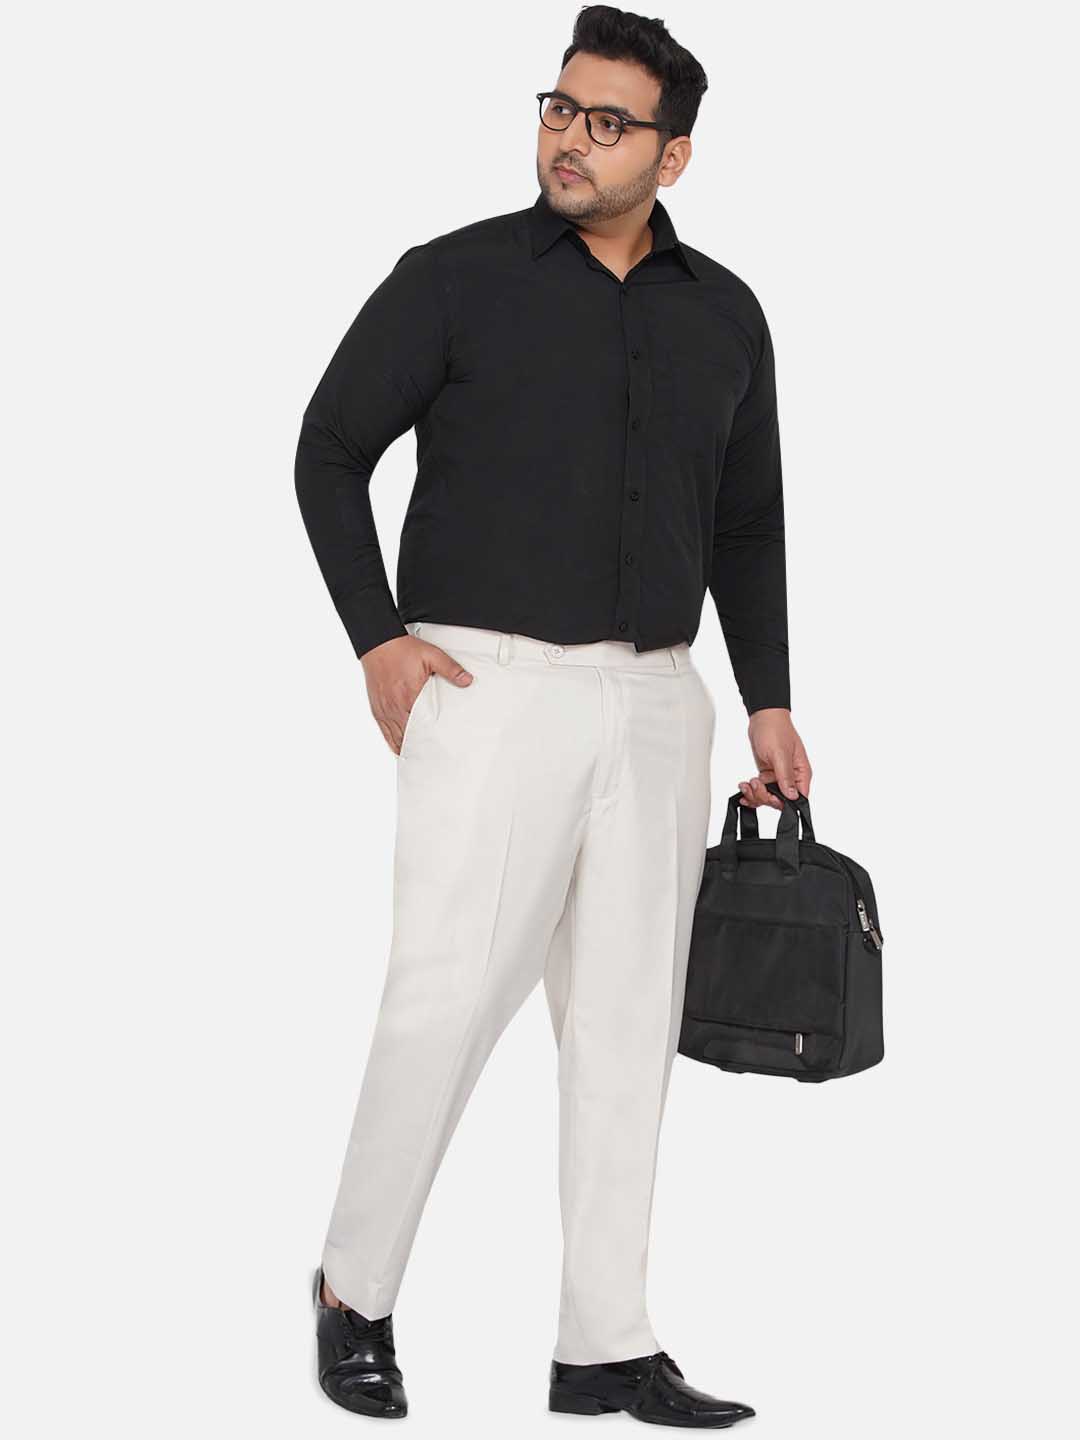 bottomwear/trousers/JPTR22010D/jptr22010d-2.jpg